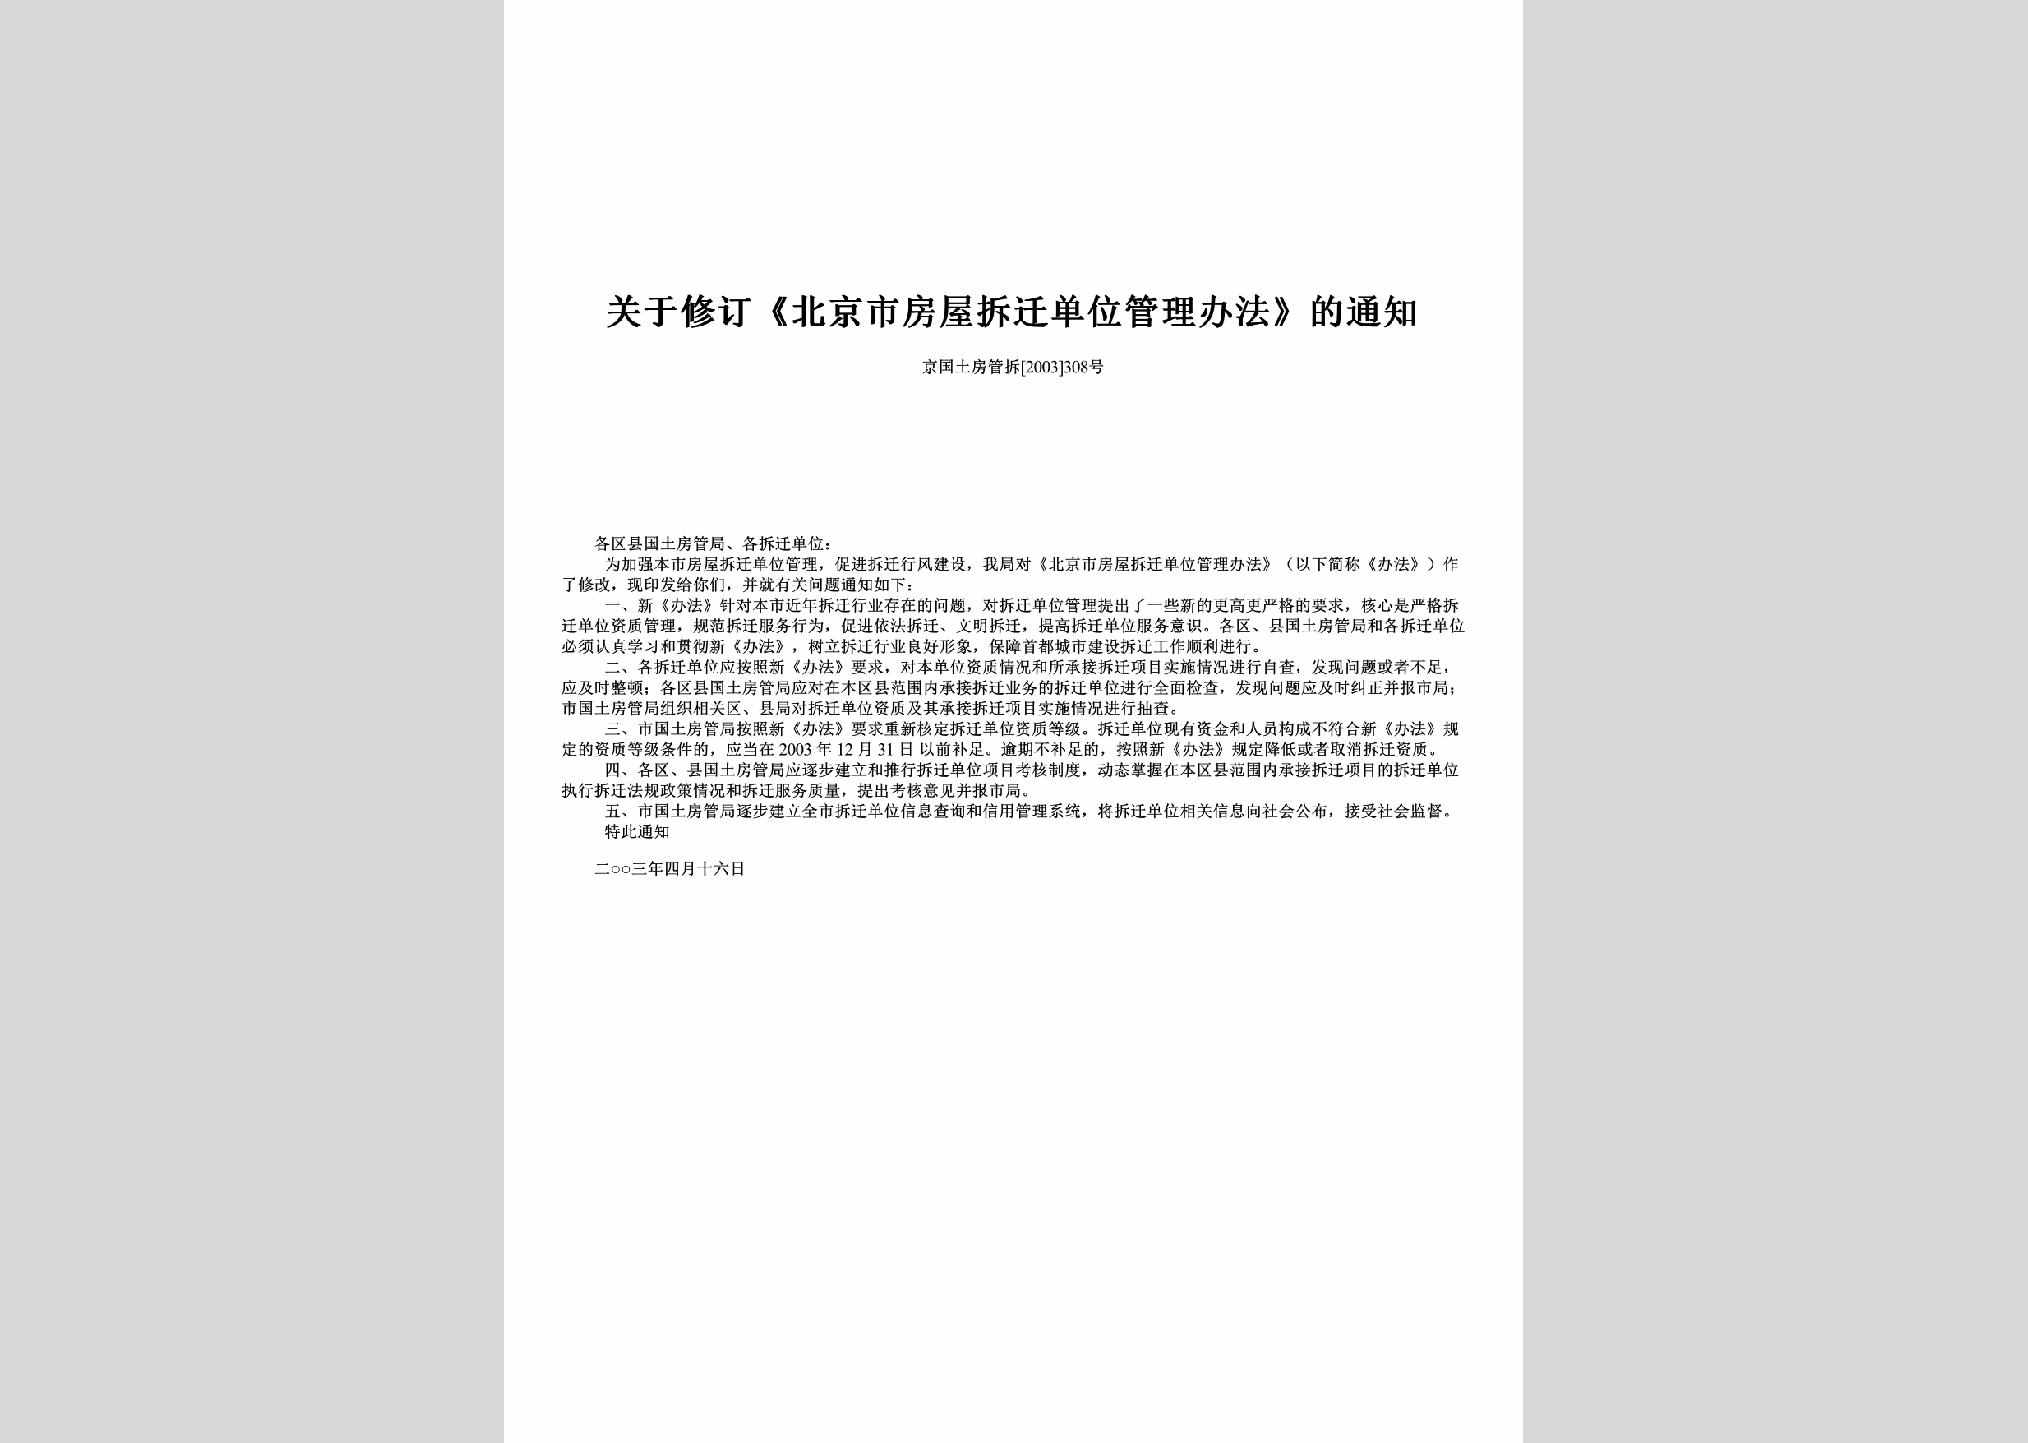 京国土房管拆[2003]308号：关于修订《北京市房屋拆迁单位管理办法》的通知